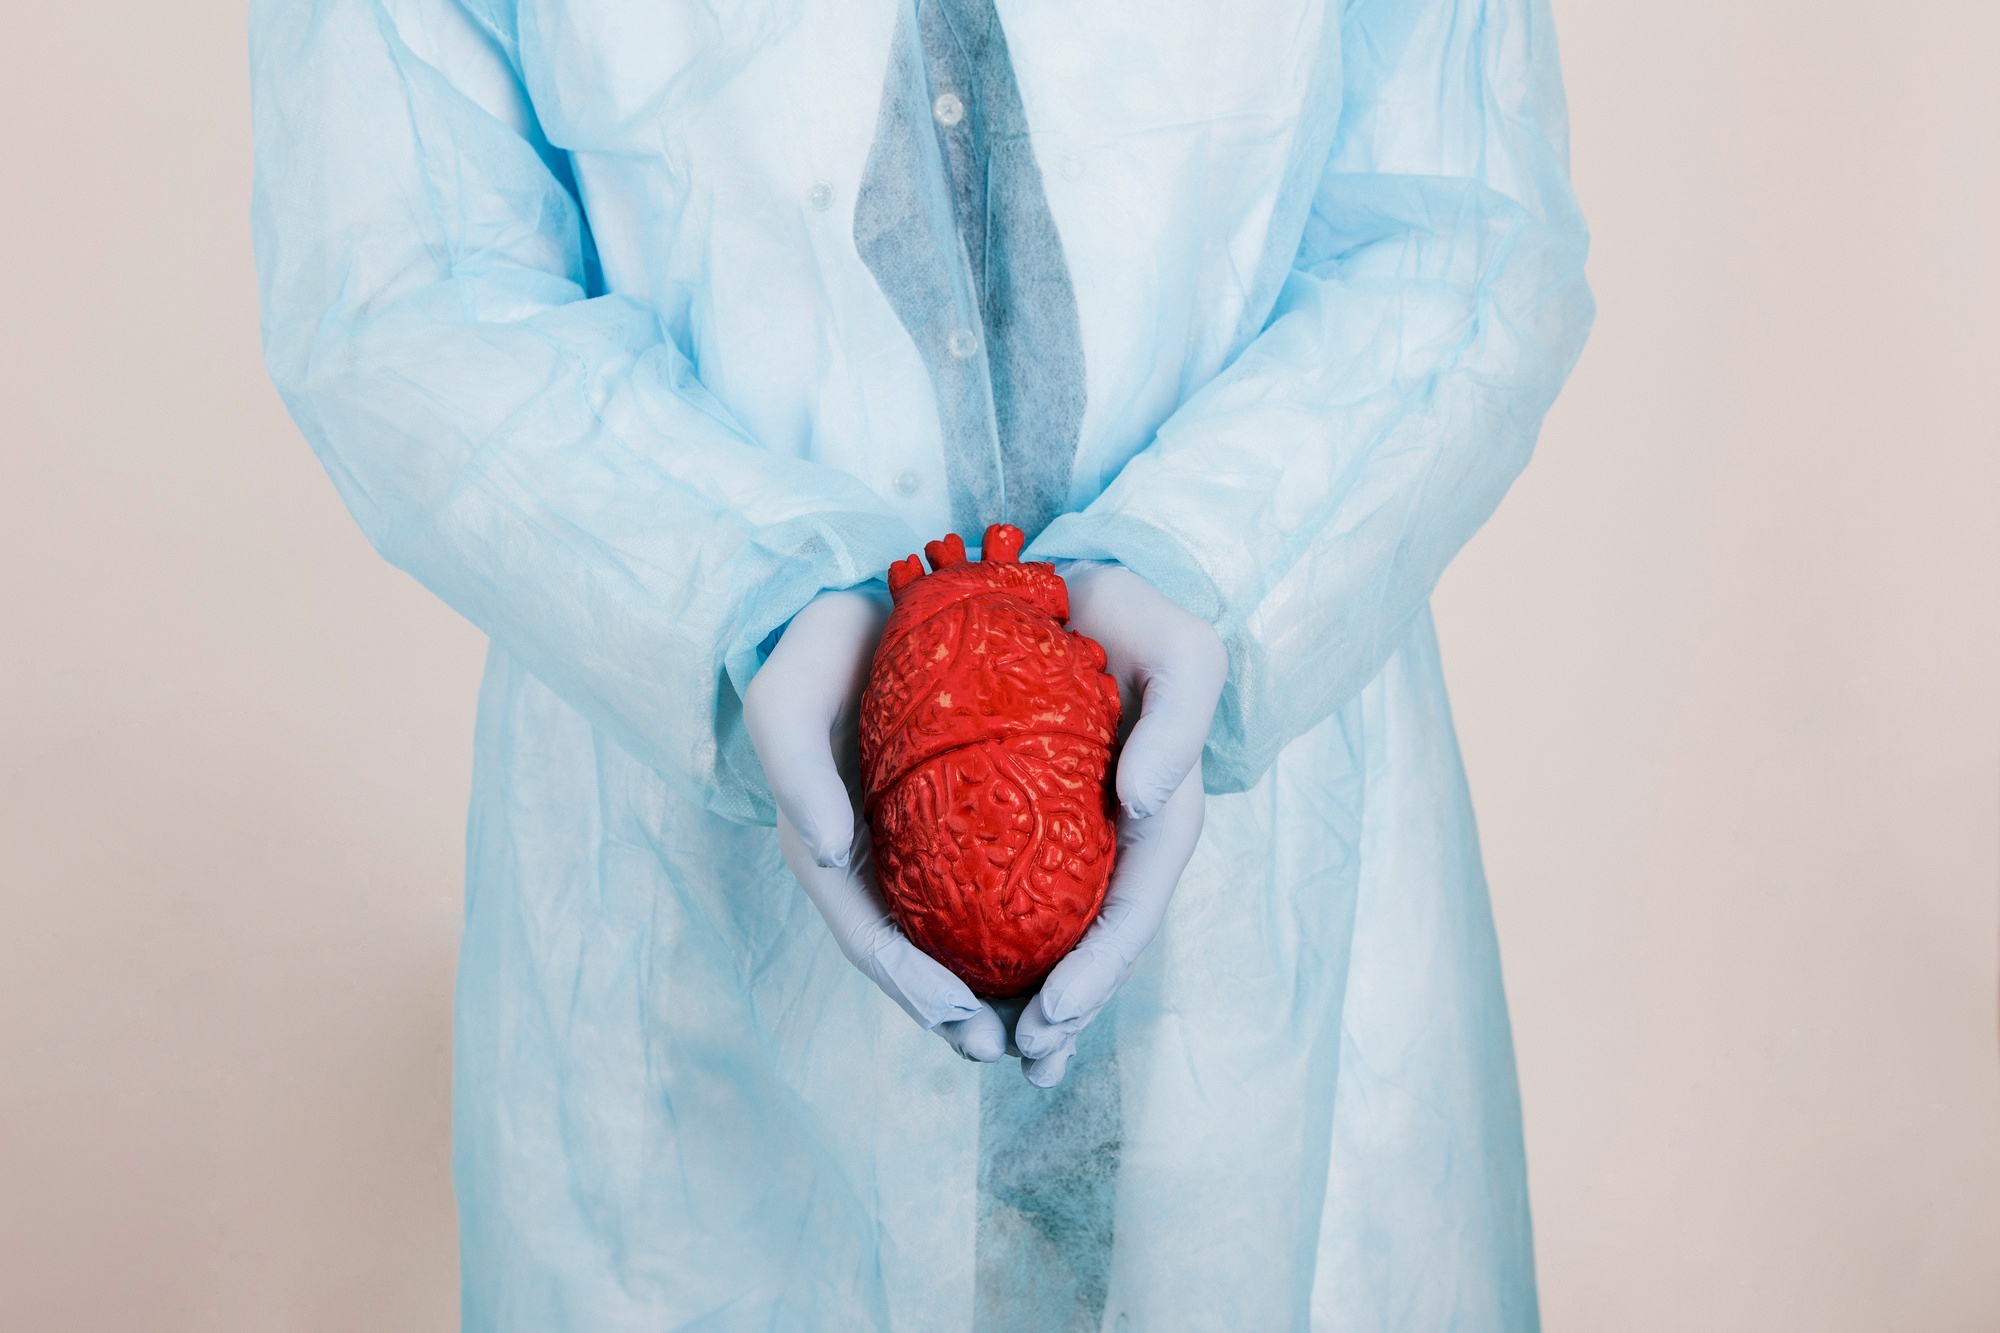 Artificial Organs: Organ Buatan untuk Kesehatan